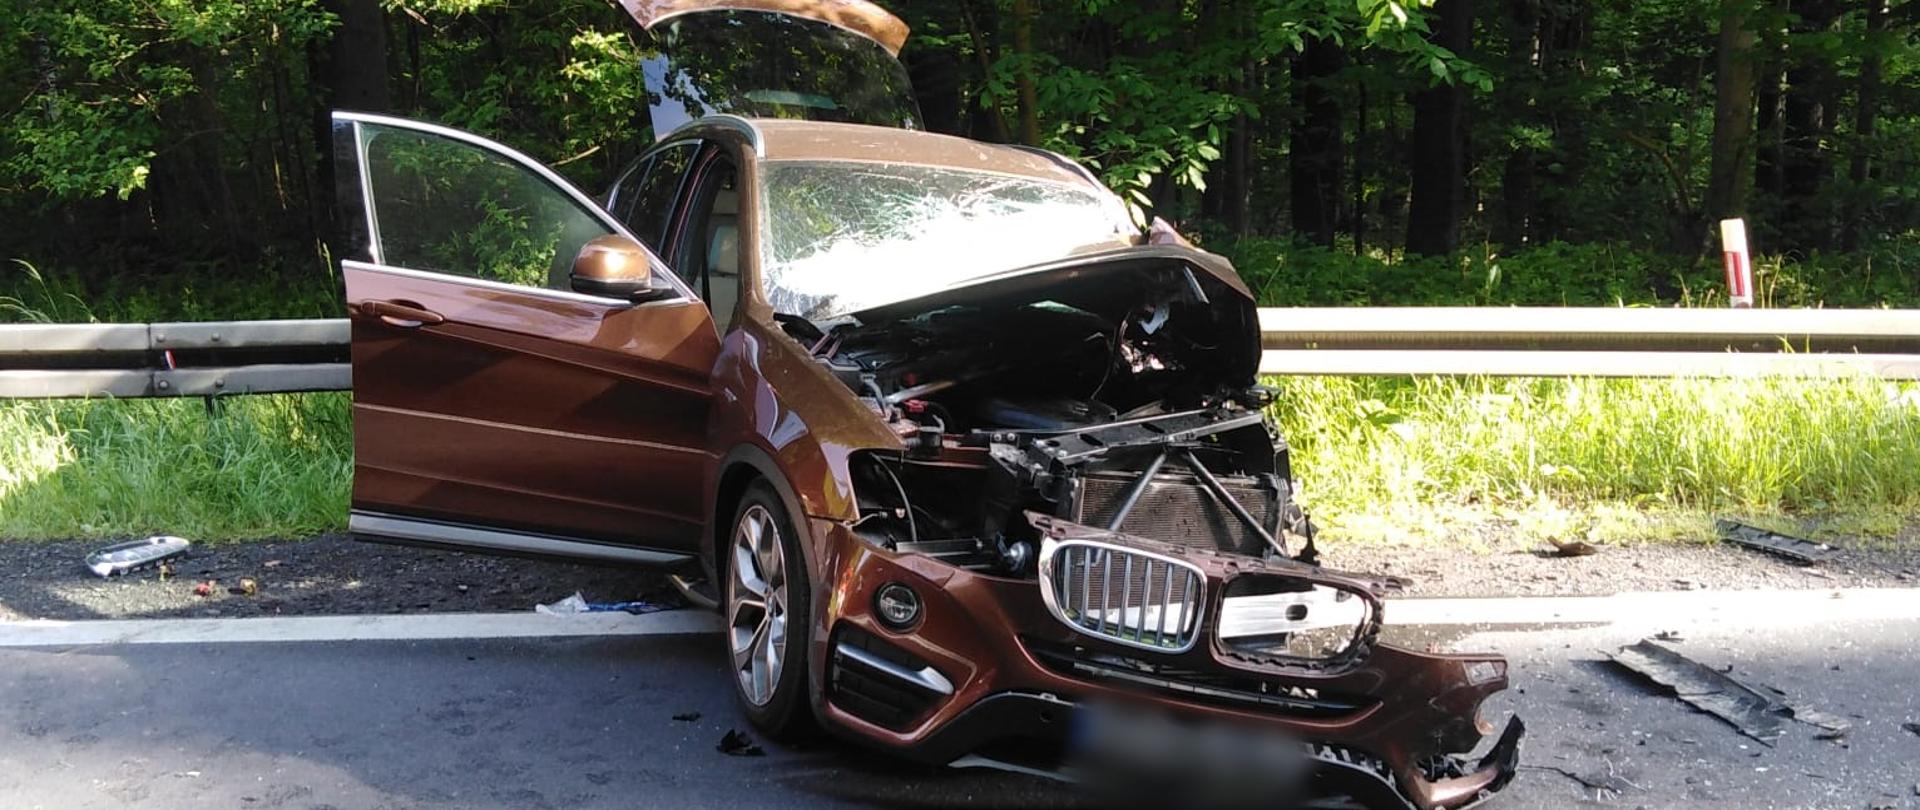 Obraz przedstawia samochód osobowy po wypadku